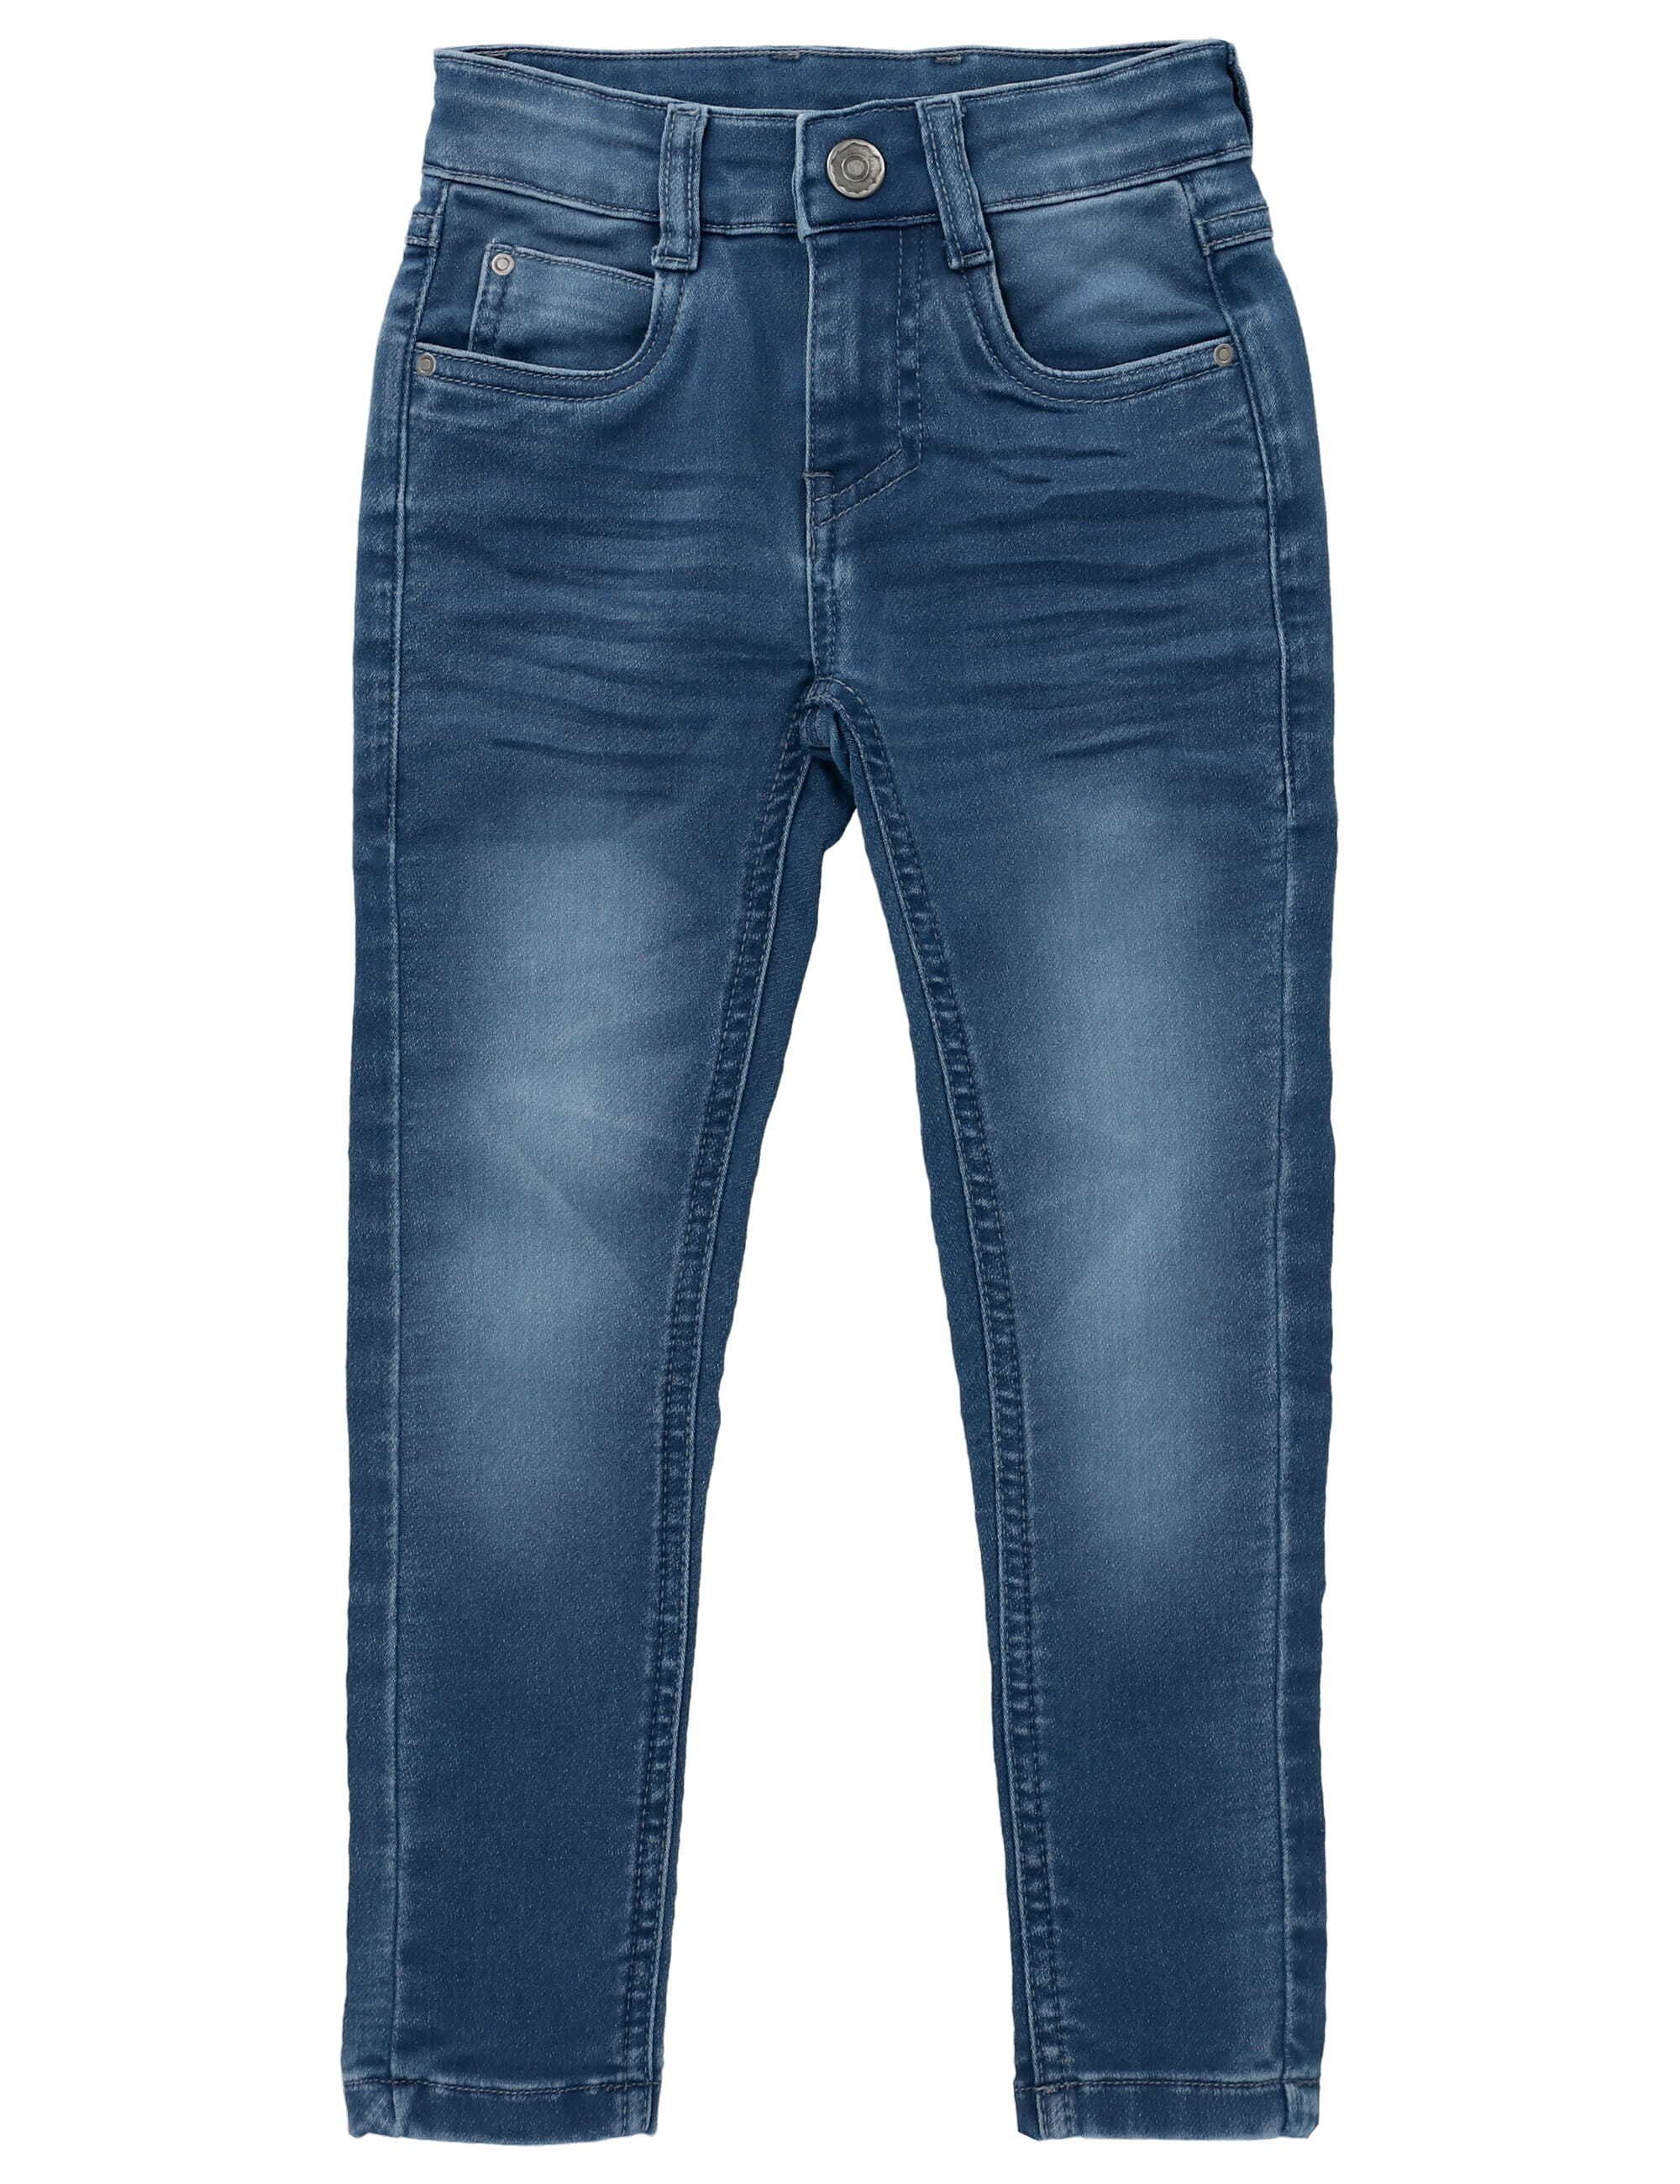 MaBu Kids Dehnbund-Jeans Jeans, Knopf & Reißverschluss erleichtern Umziehen